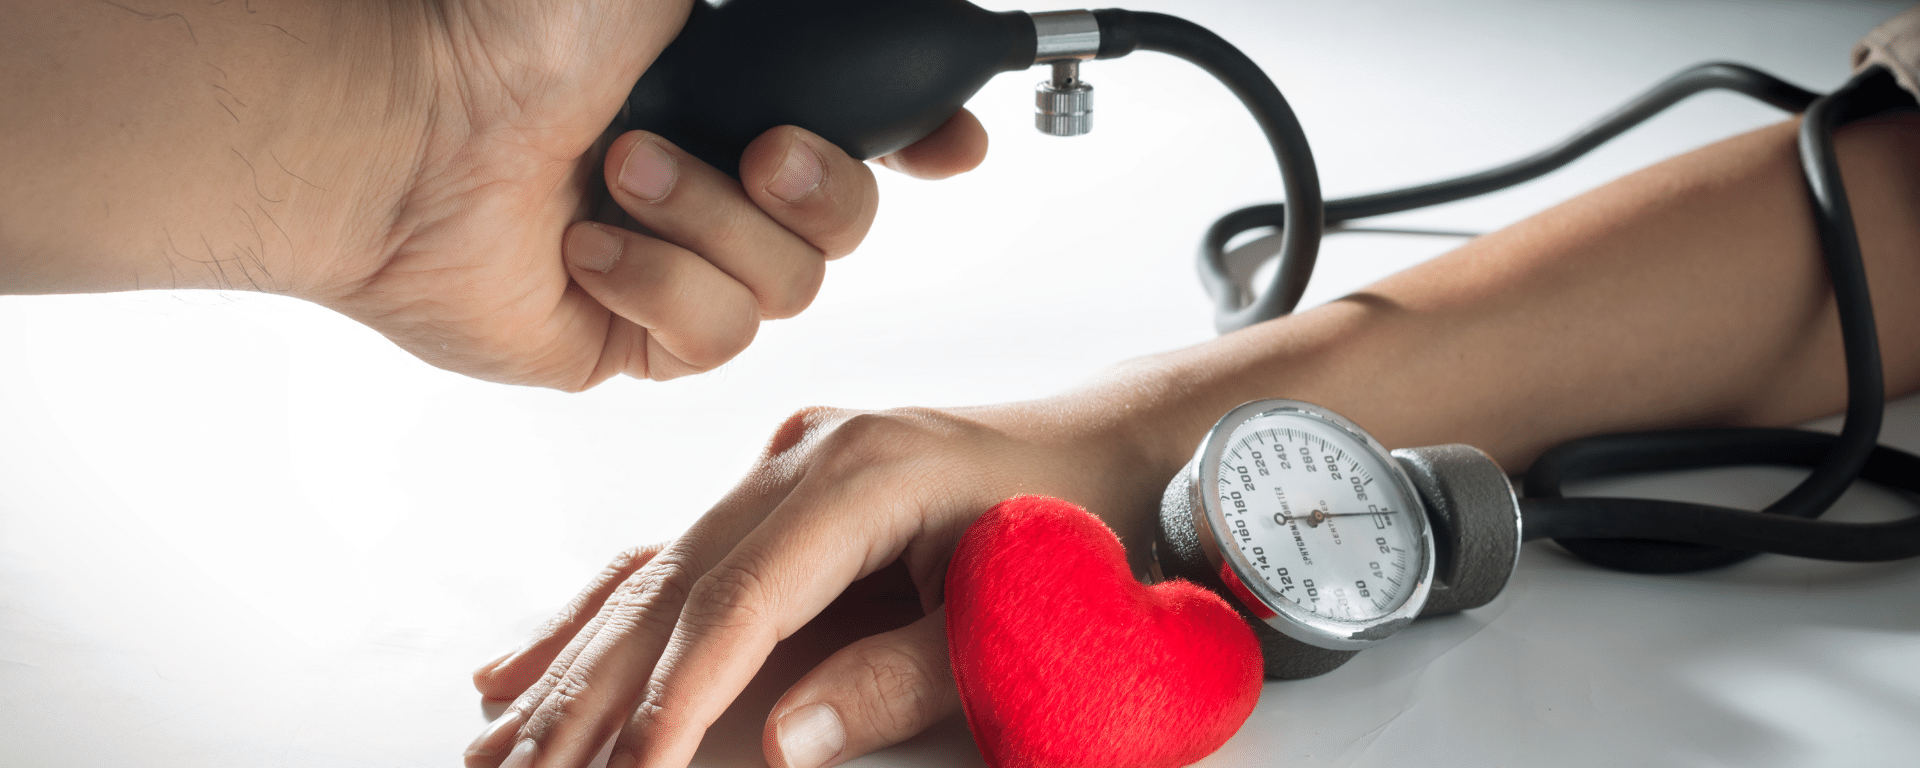 Hipertensión arterial y ejercicio